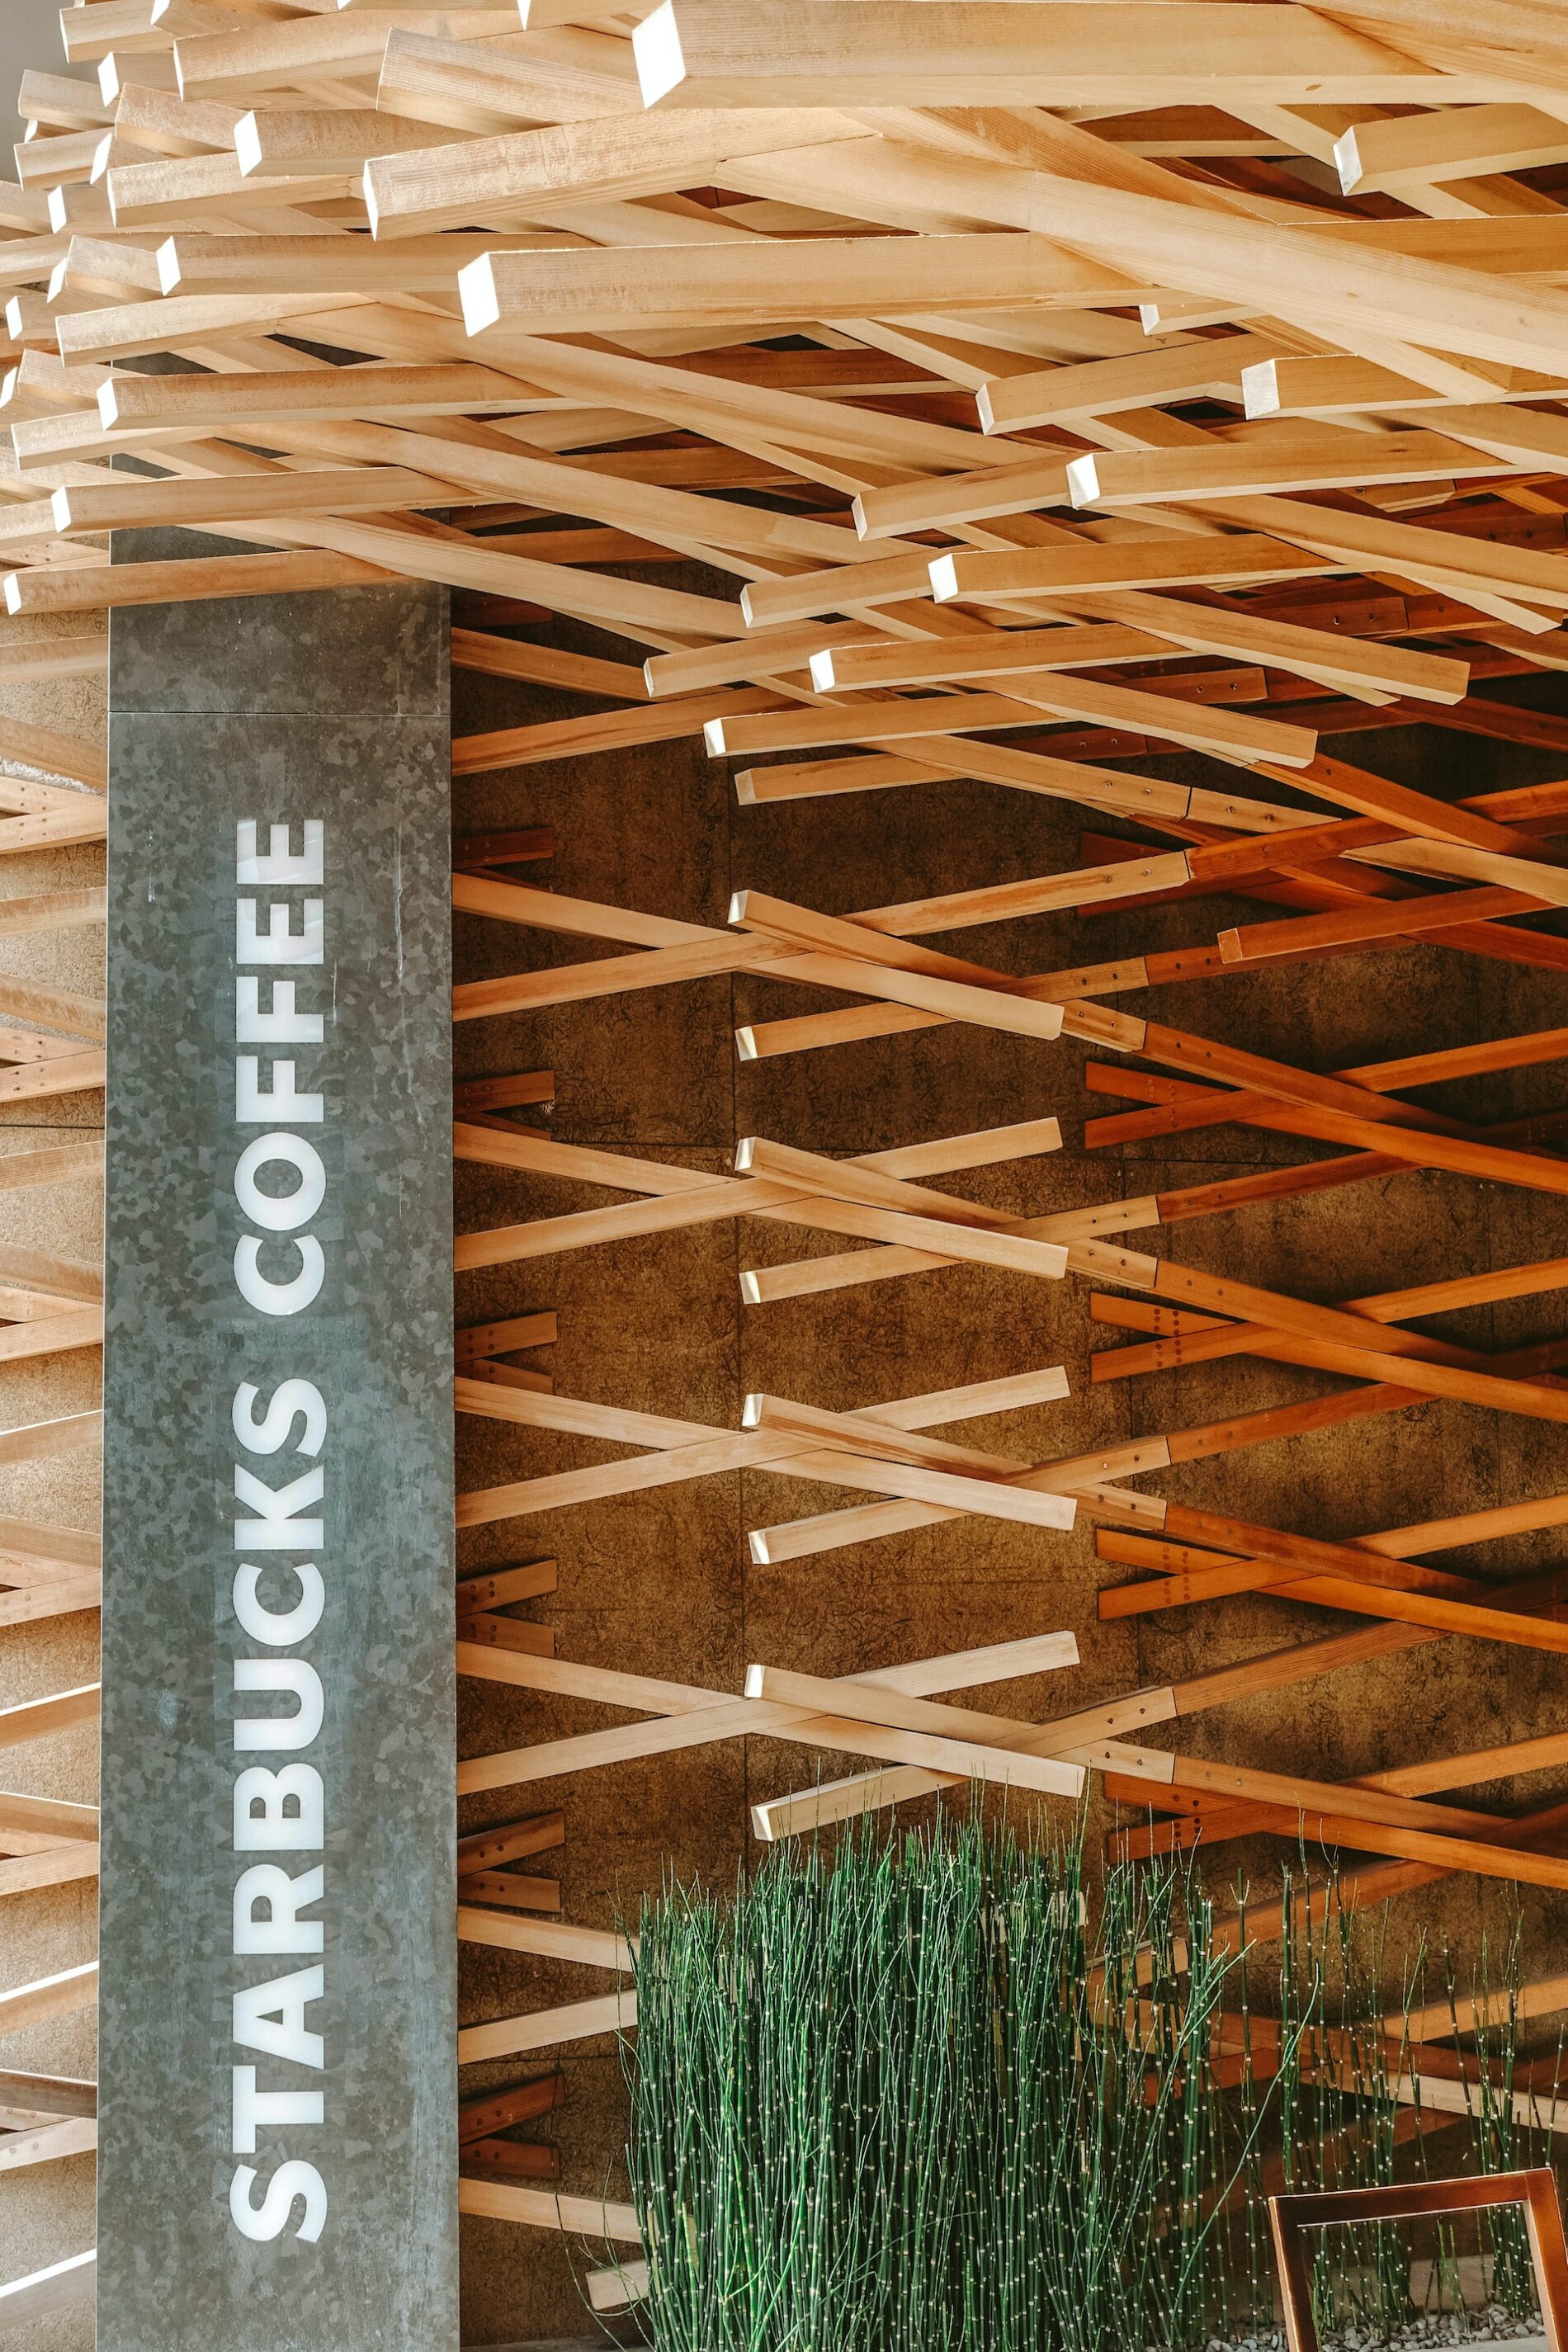 Ebenfalls von Architekt Kengo Kuma entworfen: die Starbucks-Filiale in Dazaifu. (Foto: Camille San Vicente, Unsplash https://unsplash.com/photos/zwSER9Oi09M)